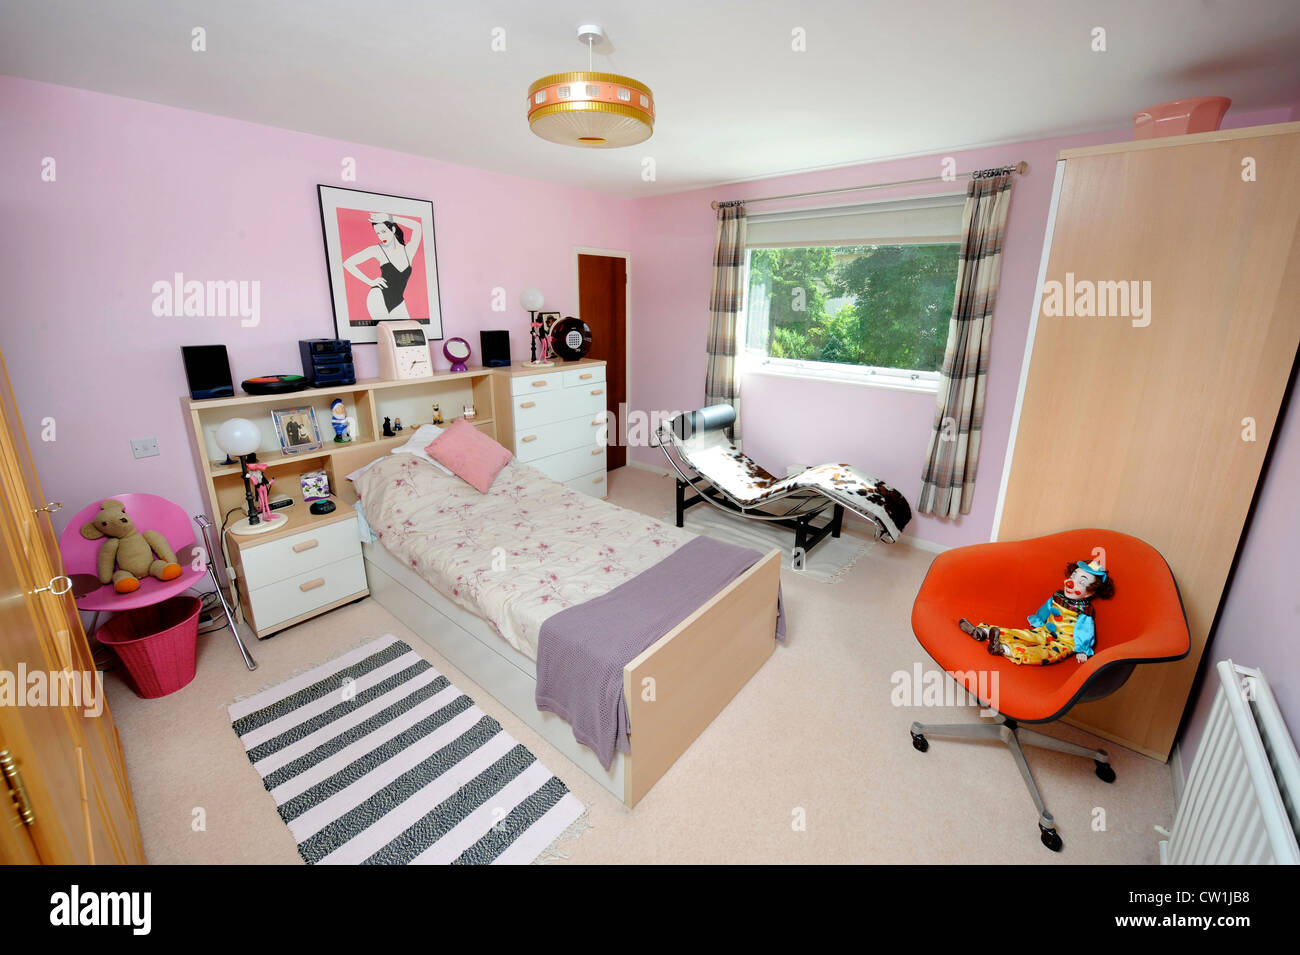 Ein Kinder-Schlafzimmer in einem 70er Jahre Stilhaus in eine 1975 Magazin  Verjüngungskur UK wurde vorgestellt Stockfotografie - Alamy